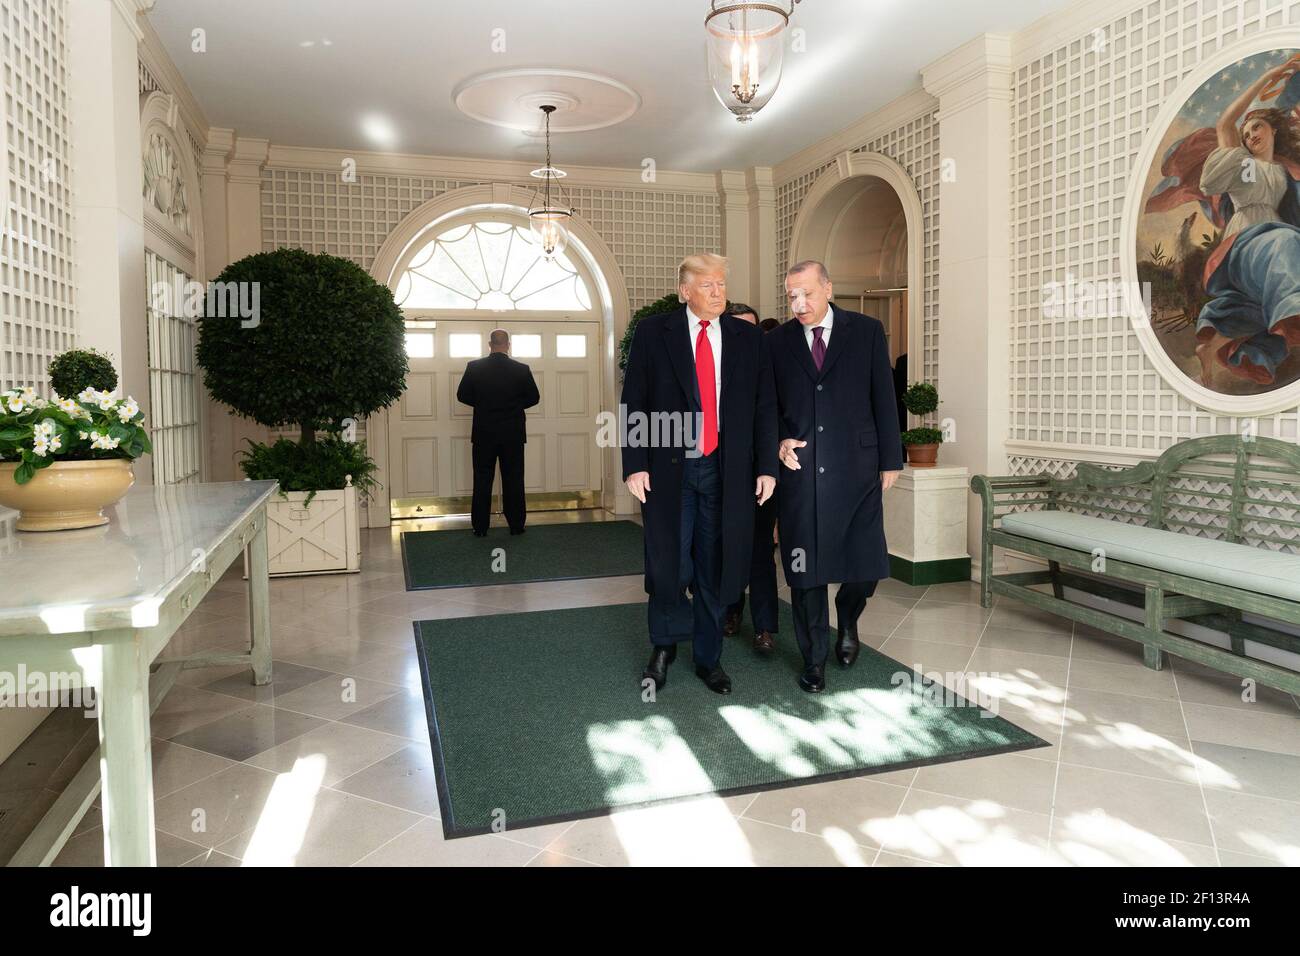 Le président Donald Trump marche avec le président turc Recep Tayyip Erdogan mercredi 13 2019 novembre de la salle de réception diplomatique au bureau ovale de la Maison Blanche. Banque D'Images